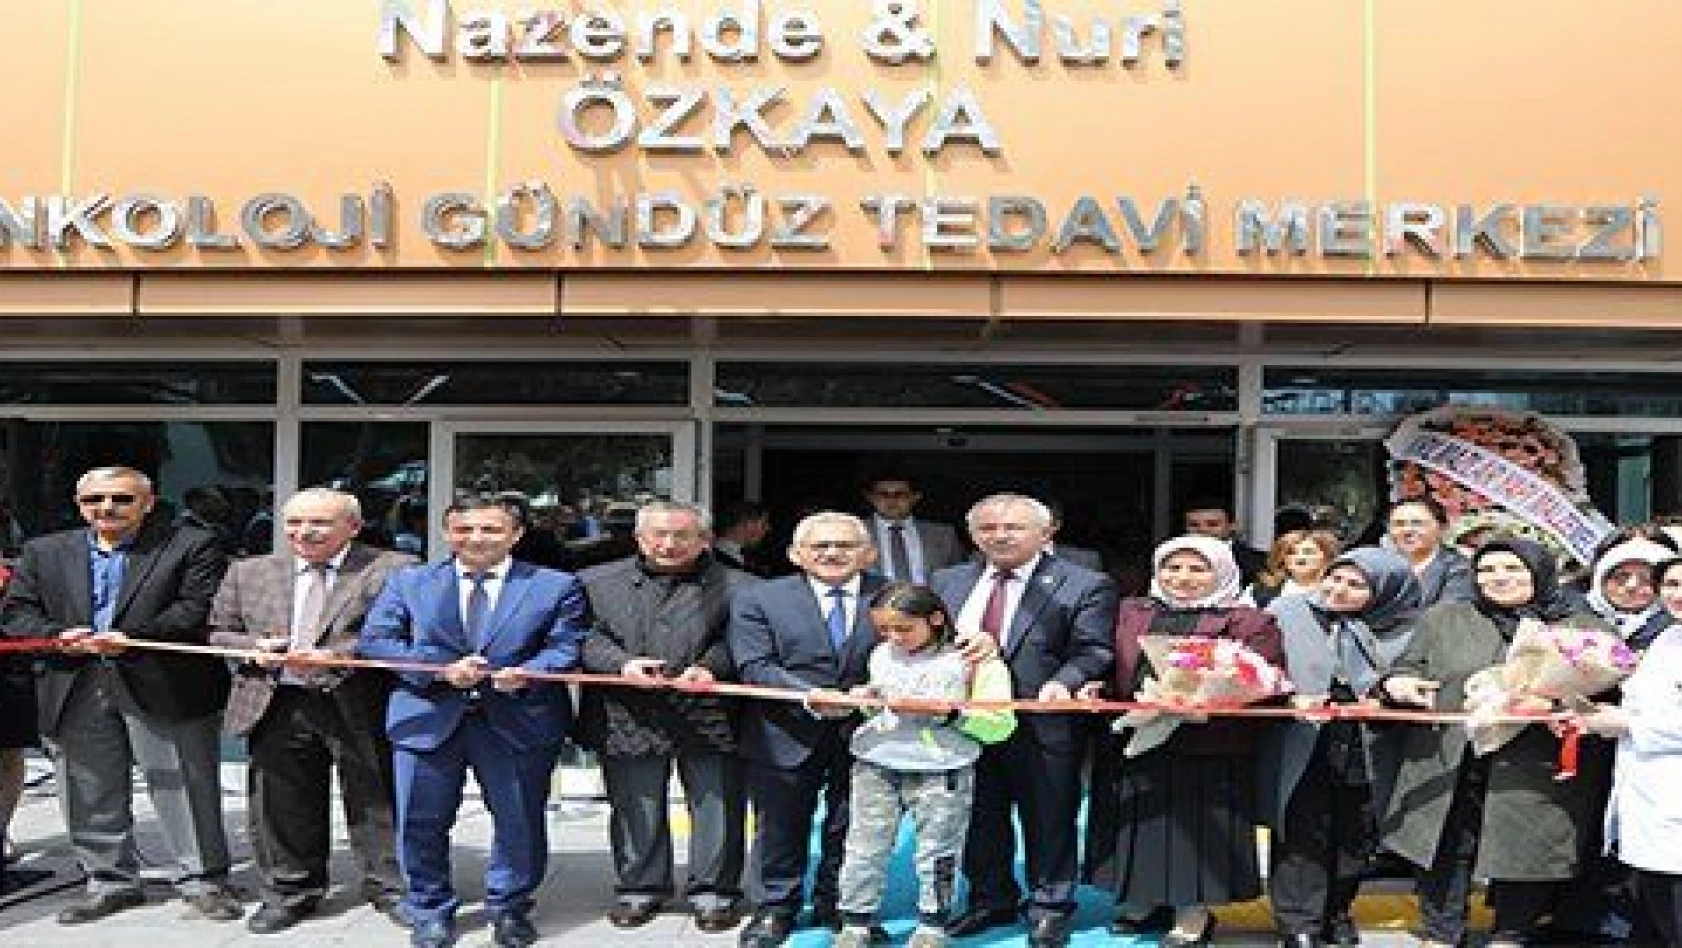 ERÜ'de Nazende-Nuri Özkaya Onkoloji Gündüz Tedavi Merkezi'nin Açılışı Yapıldı